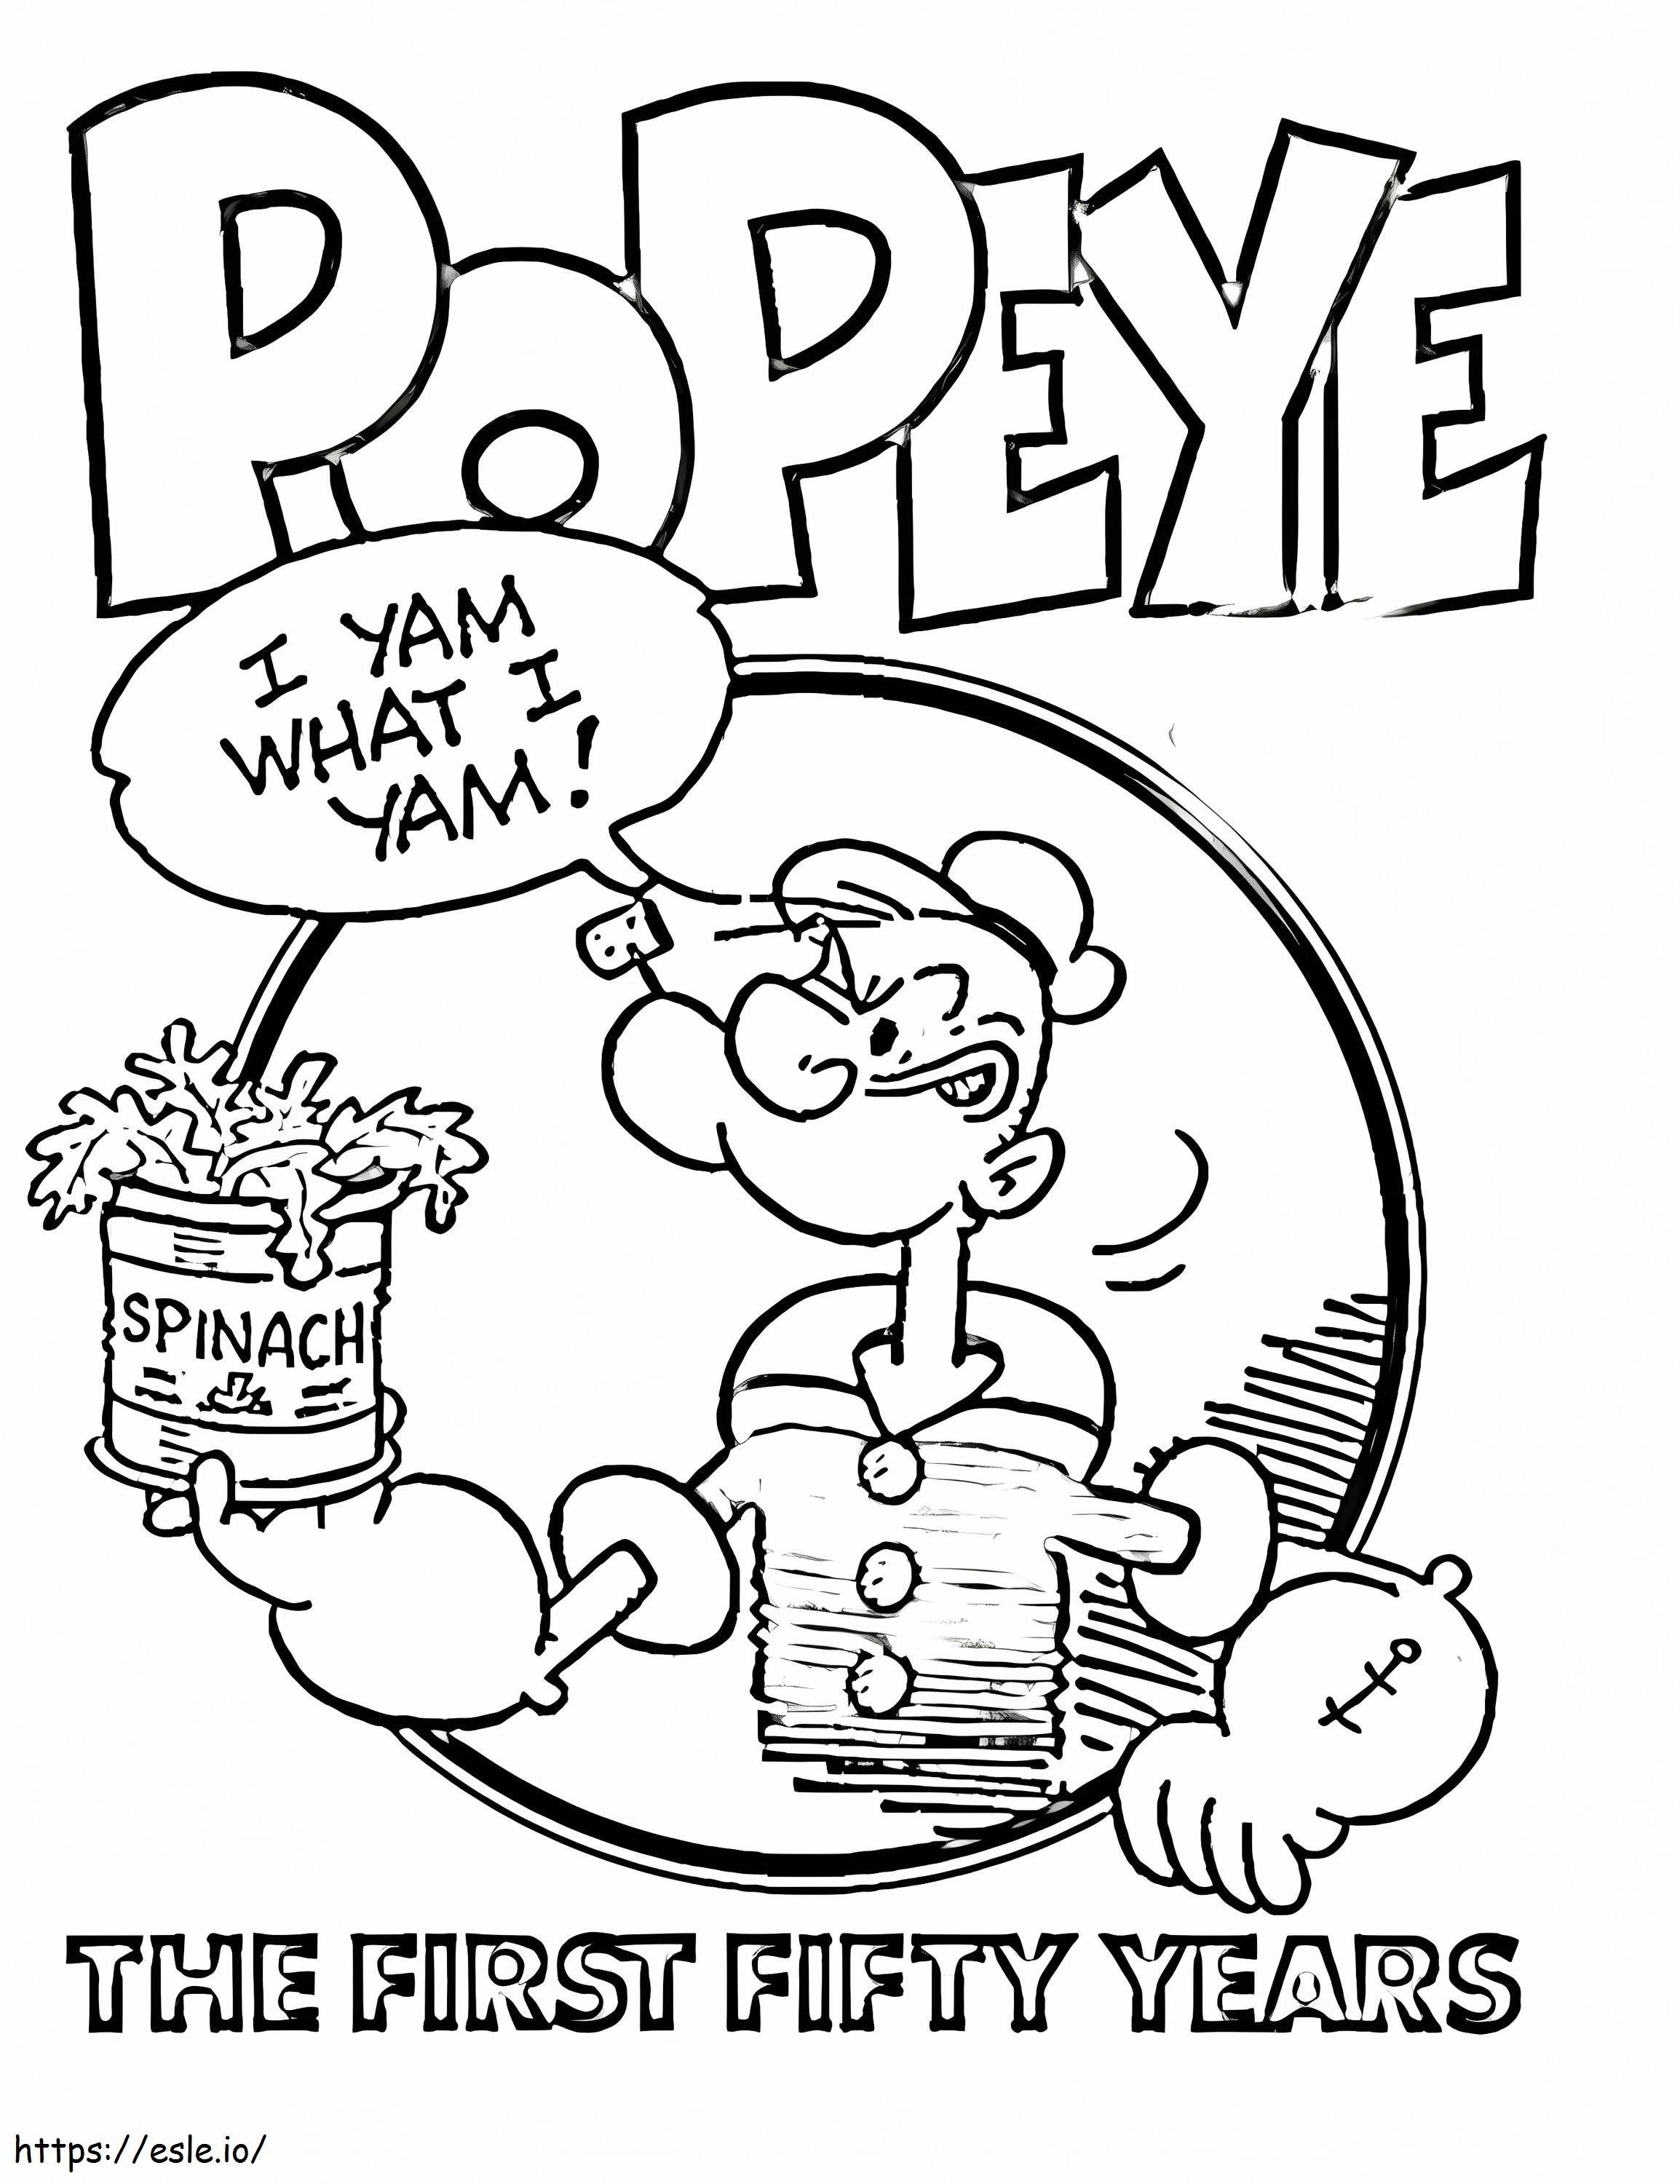 Popeye che tiene gli spinaci da colorare